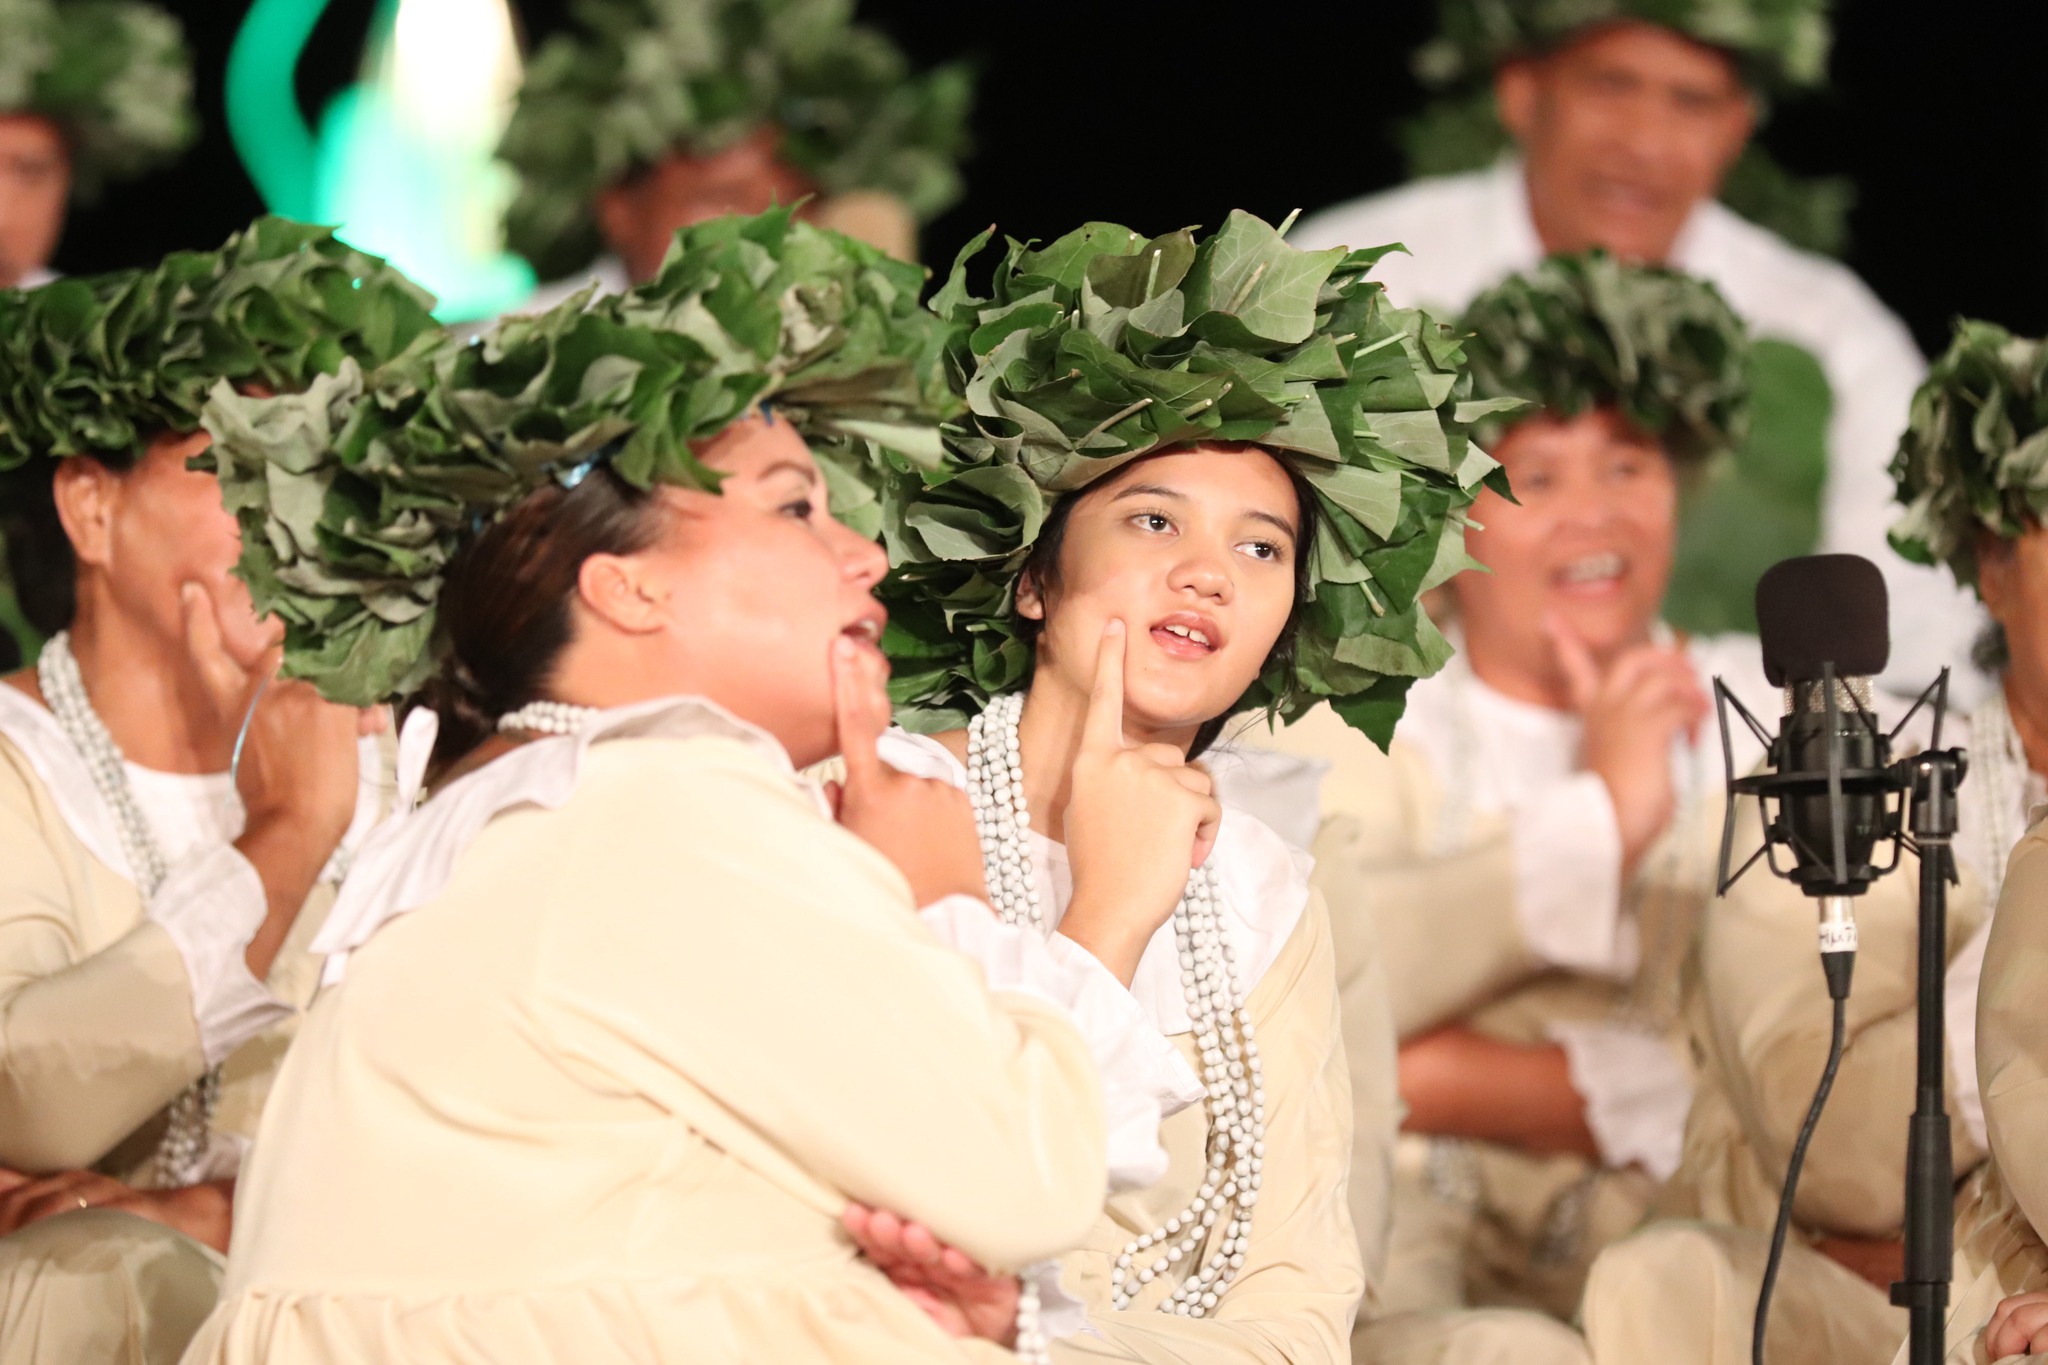 Les festivités du Heiva s’achèvent au Nu’uroa Fest’